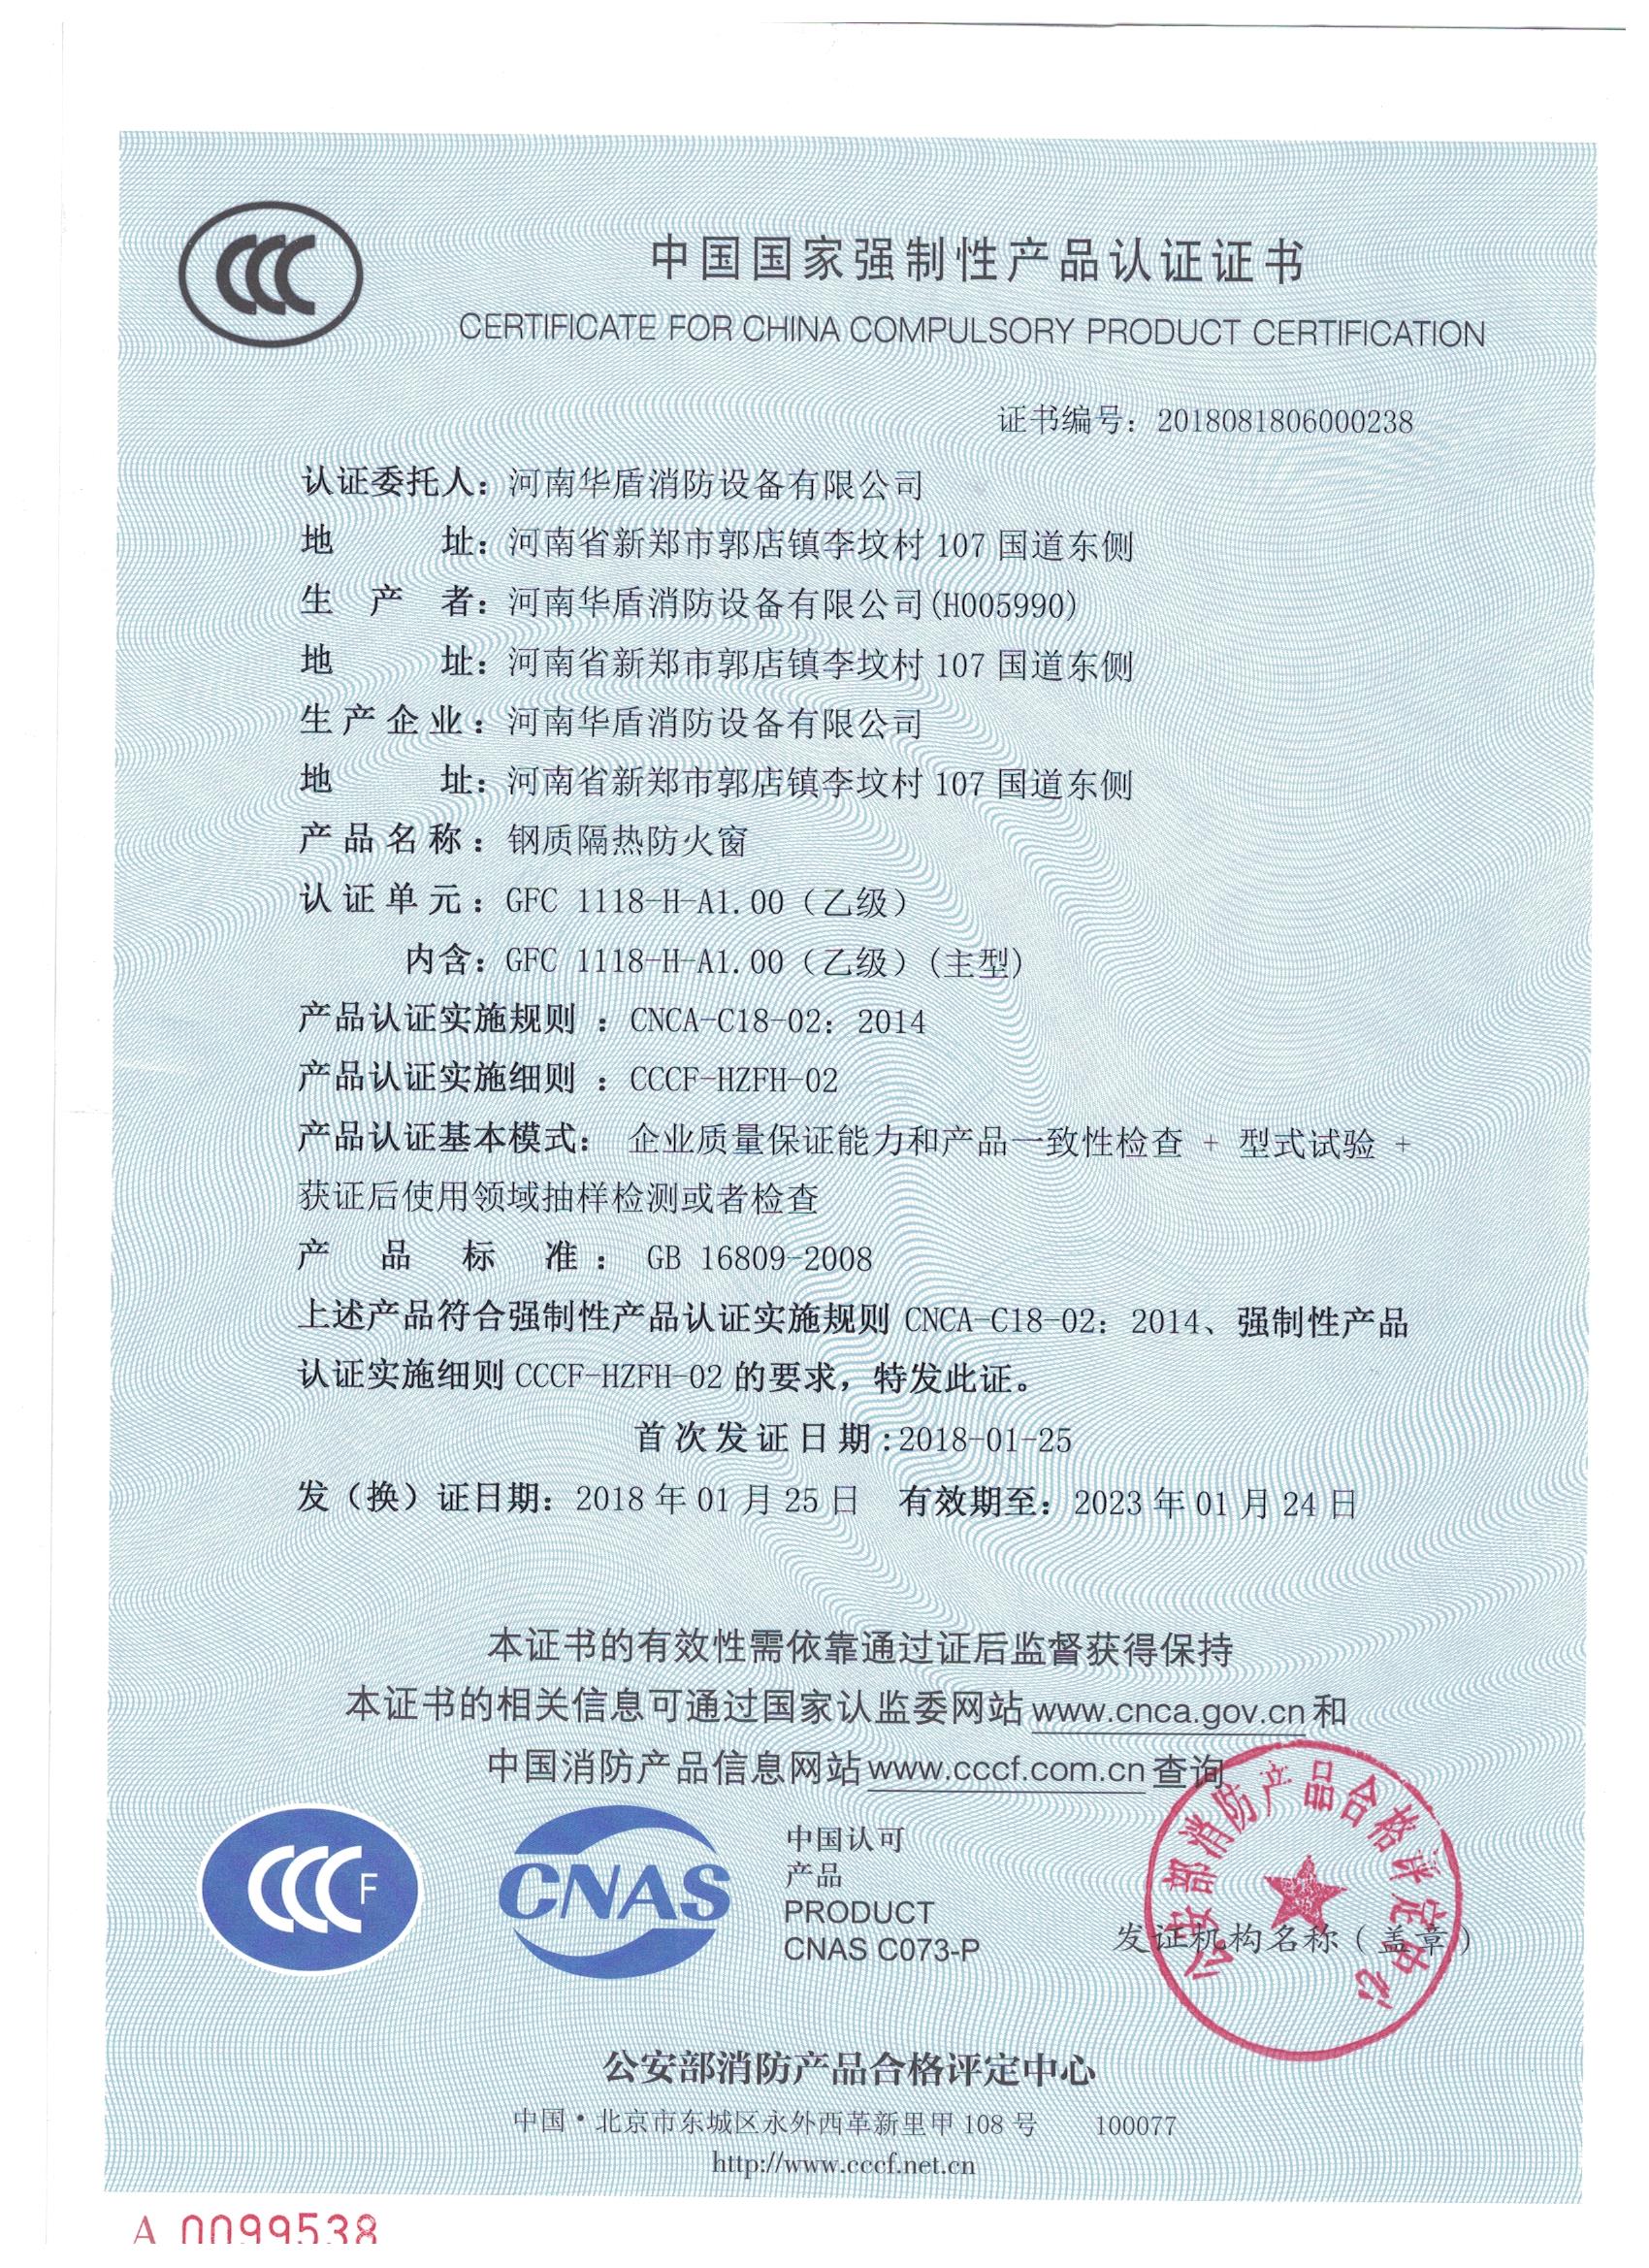 郑州非隔热防火窗-3C证书/检验报告